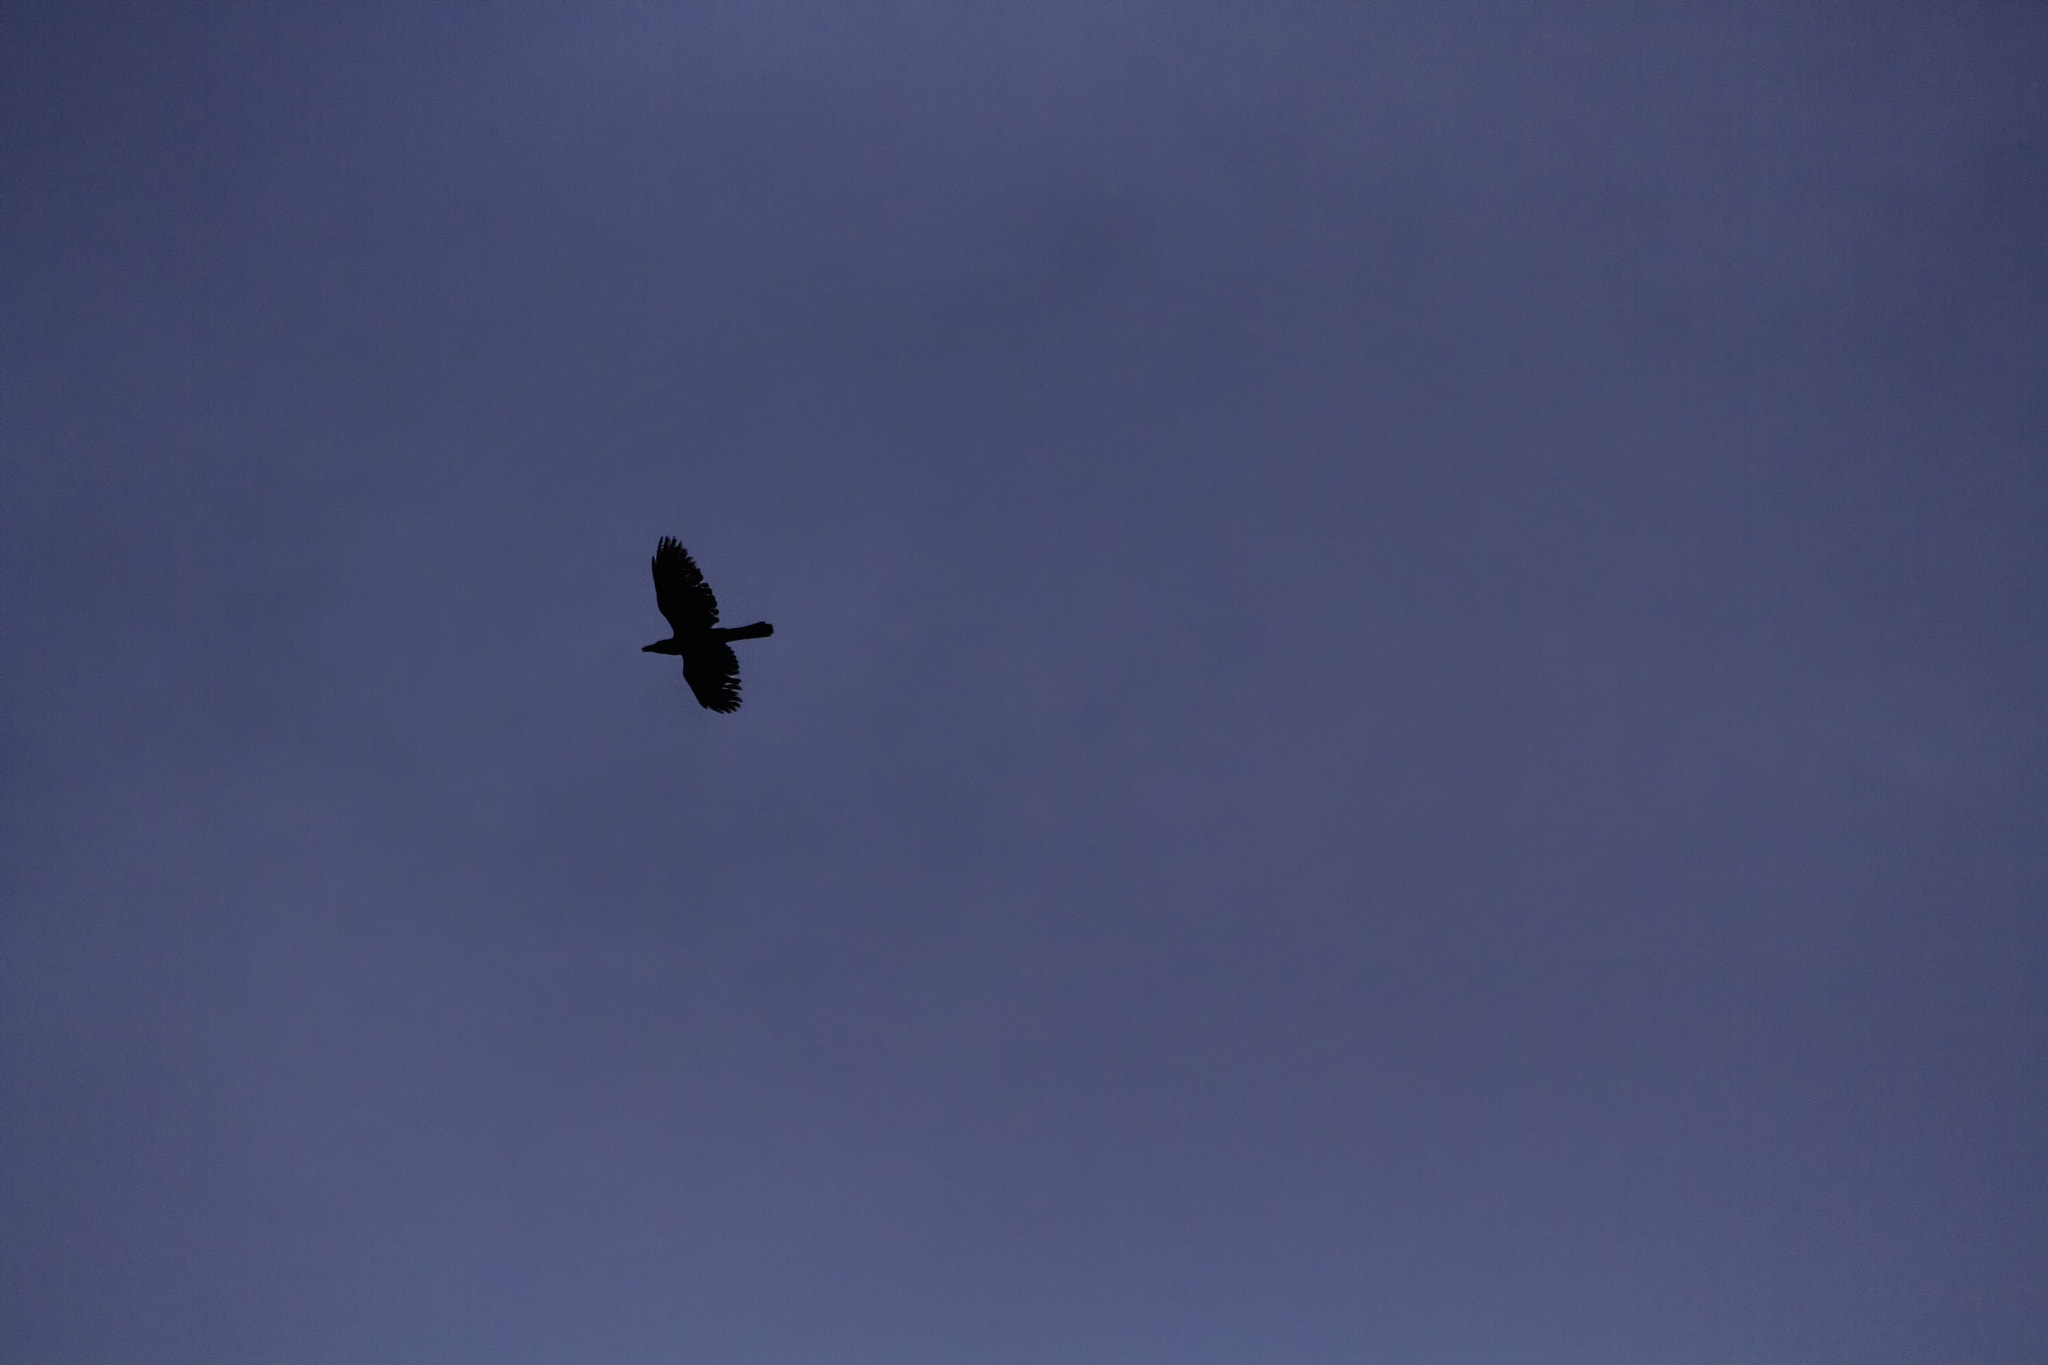 Canon EOS 7D sample photo. Migrating bird photography